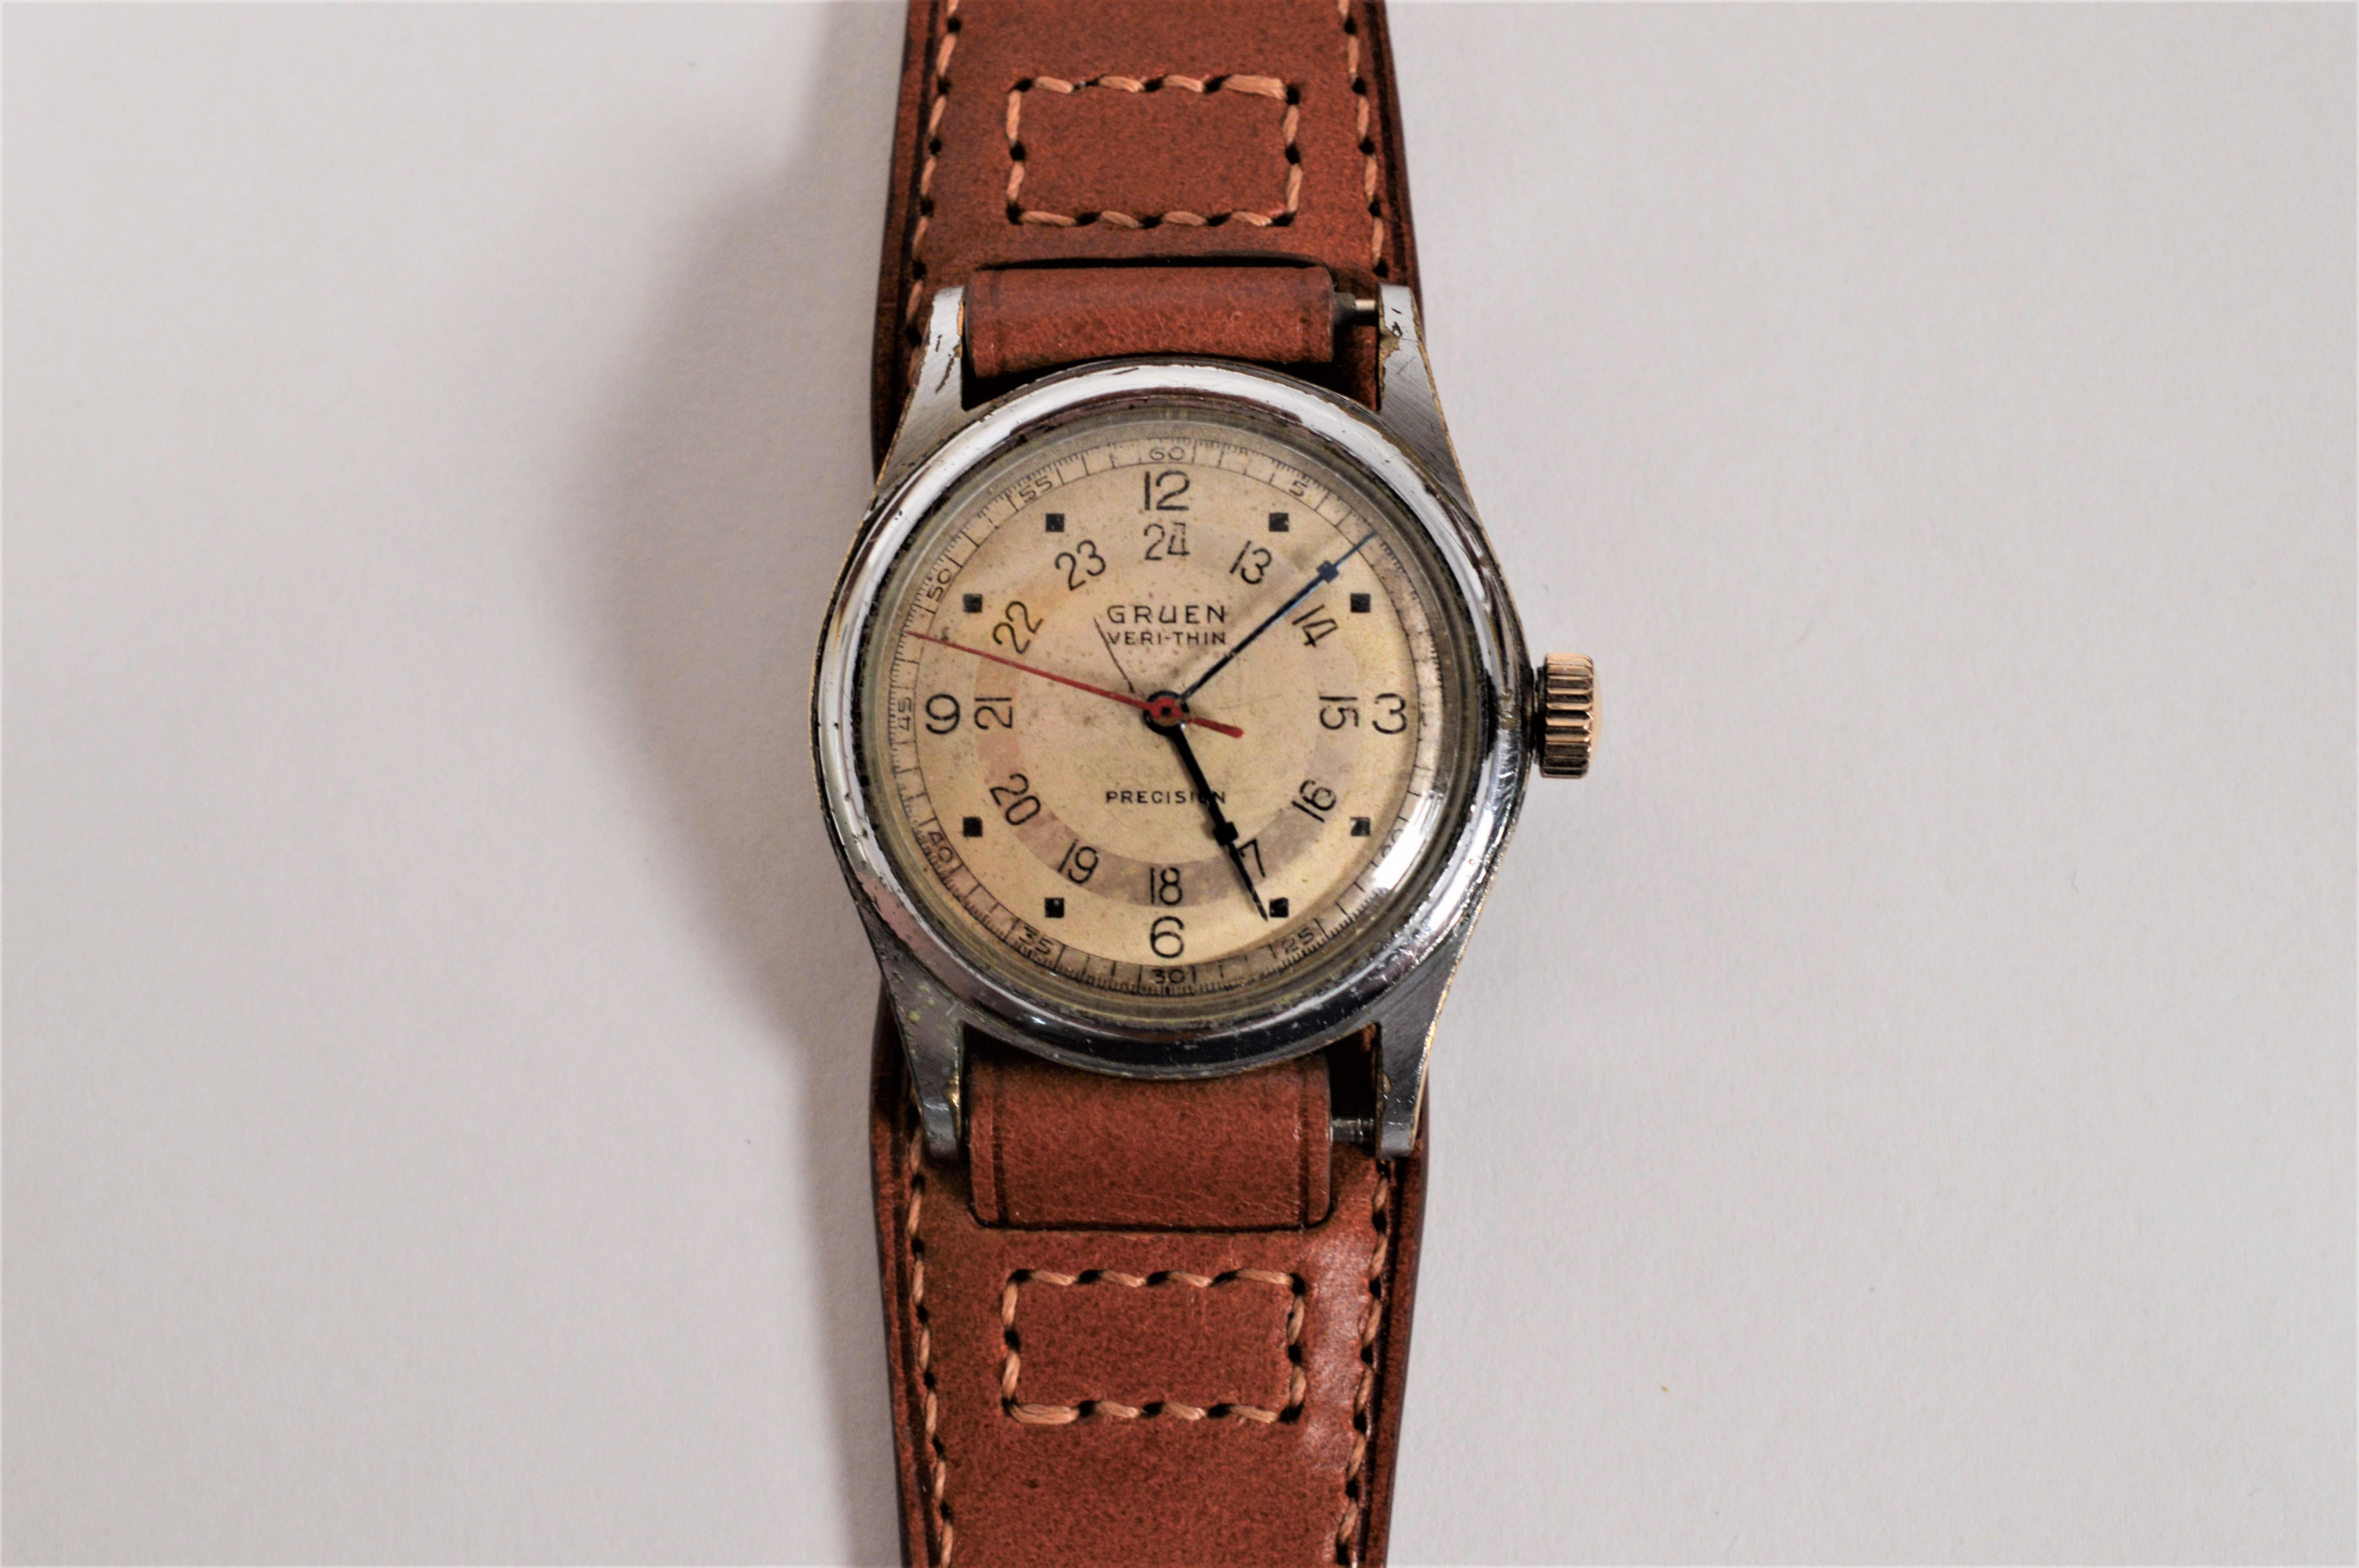 Cette montre-bracelet Pan American des années 1940, dans son état d'origine, est dotée d'un mouvement Veri Thin développé et fabriqué par Gruen Watch Co.  Basée aux États-Unis, Gruen a été l'un des plus grands fabricants de montres de ce pays